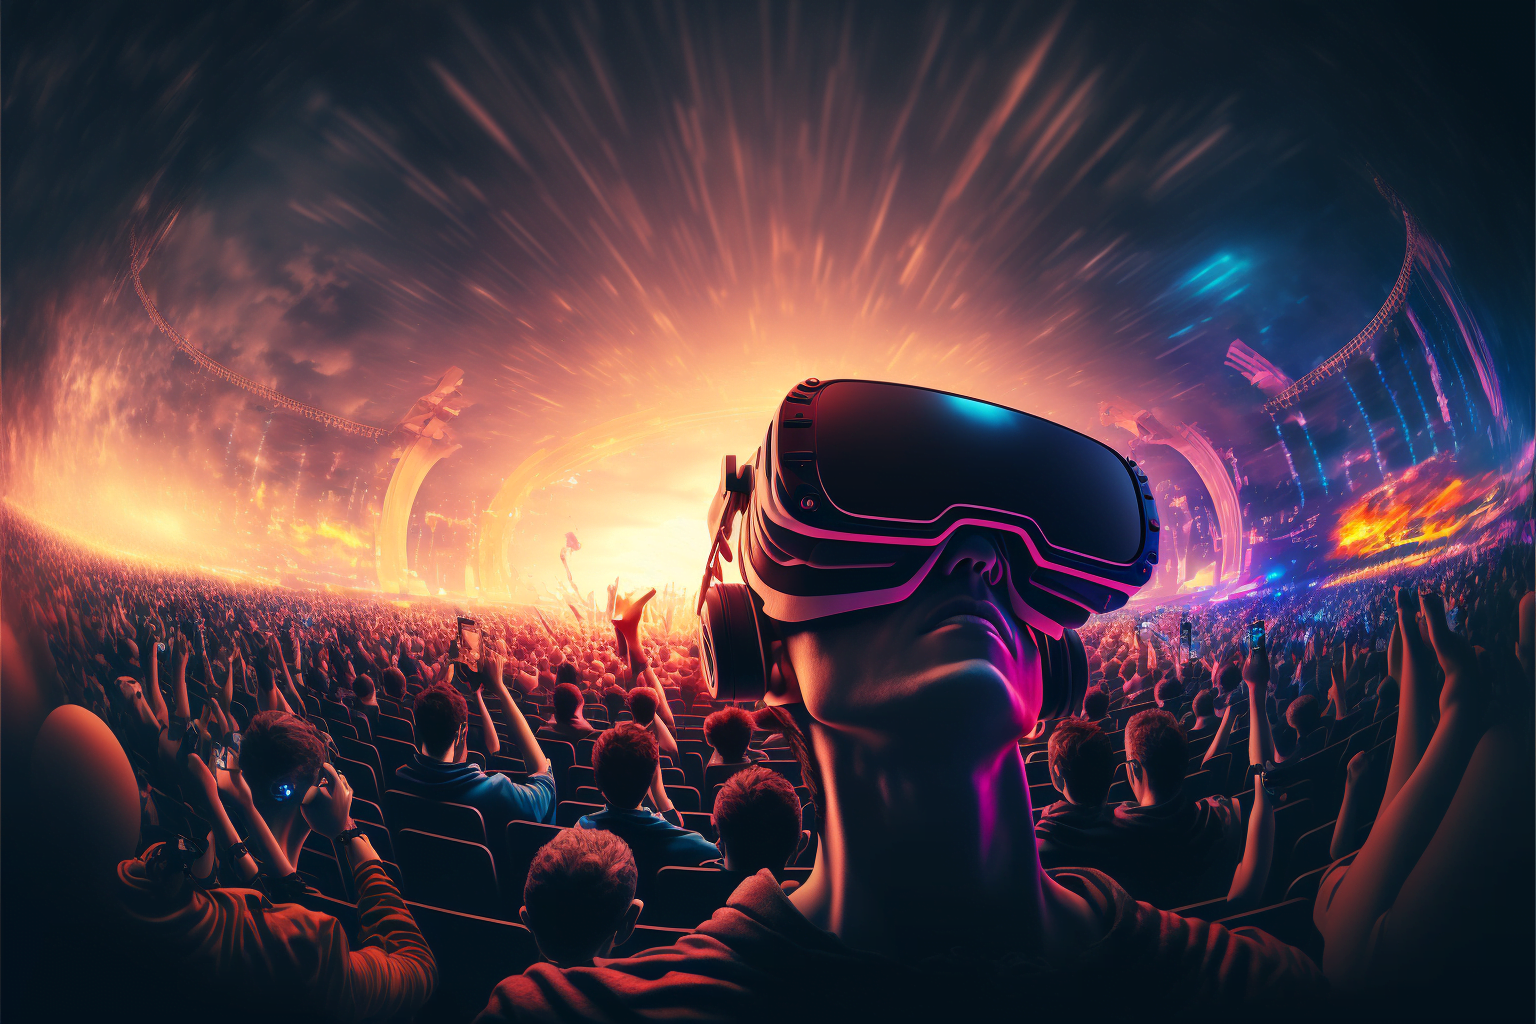 Studie zu VR-Konzerten: Gaffer im Publikum unerwünscht